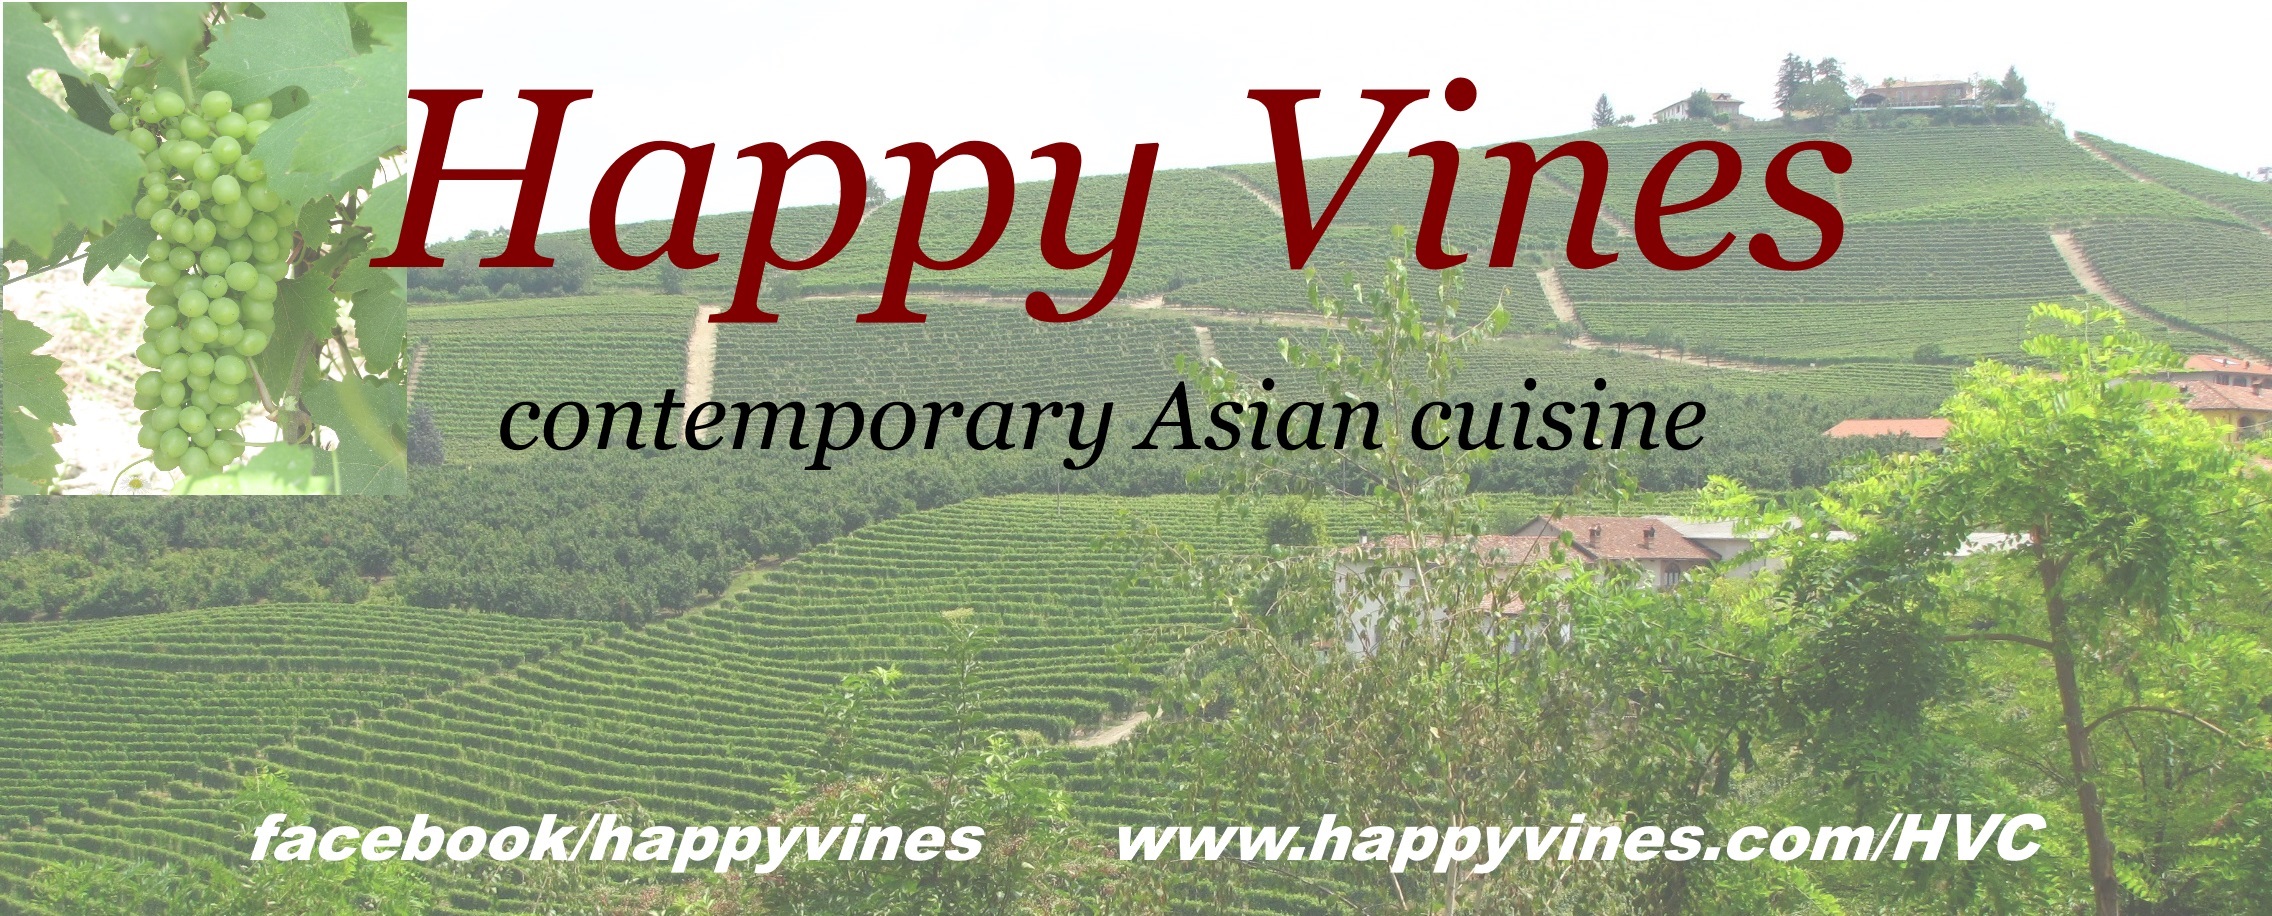 Happy Vines logo